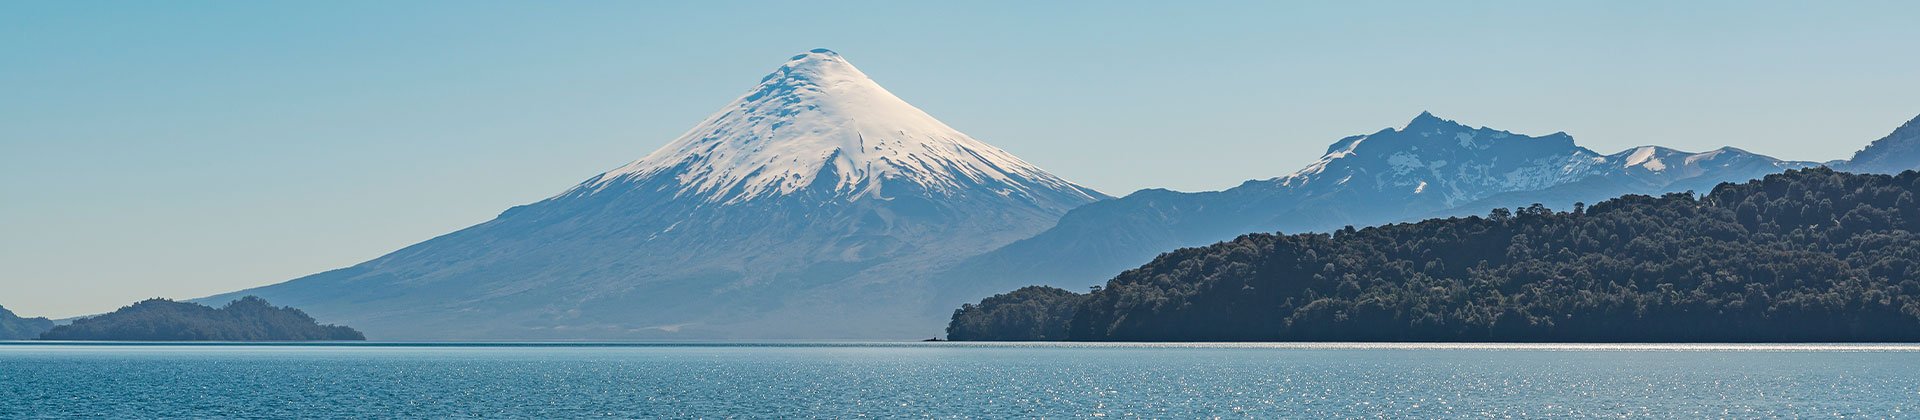 Chilean Lake District, Osorno Volcano